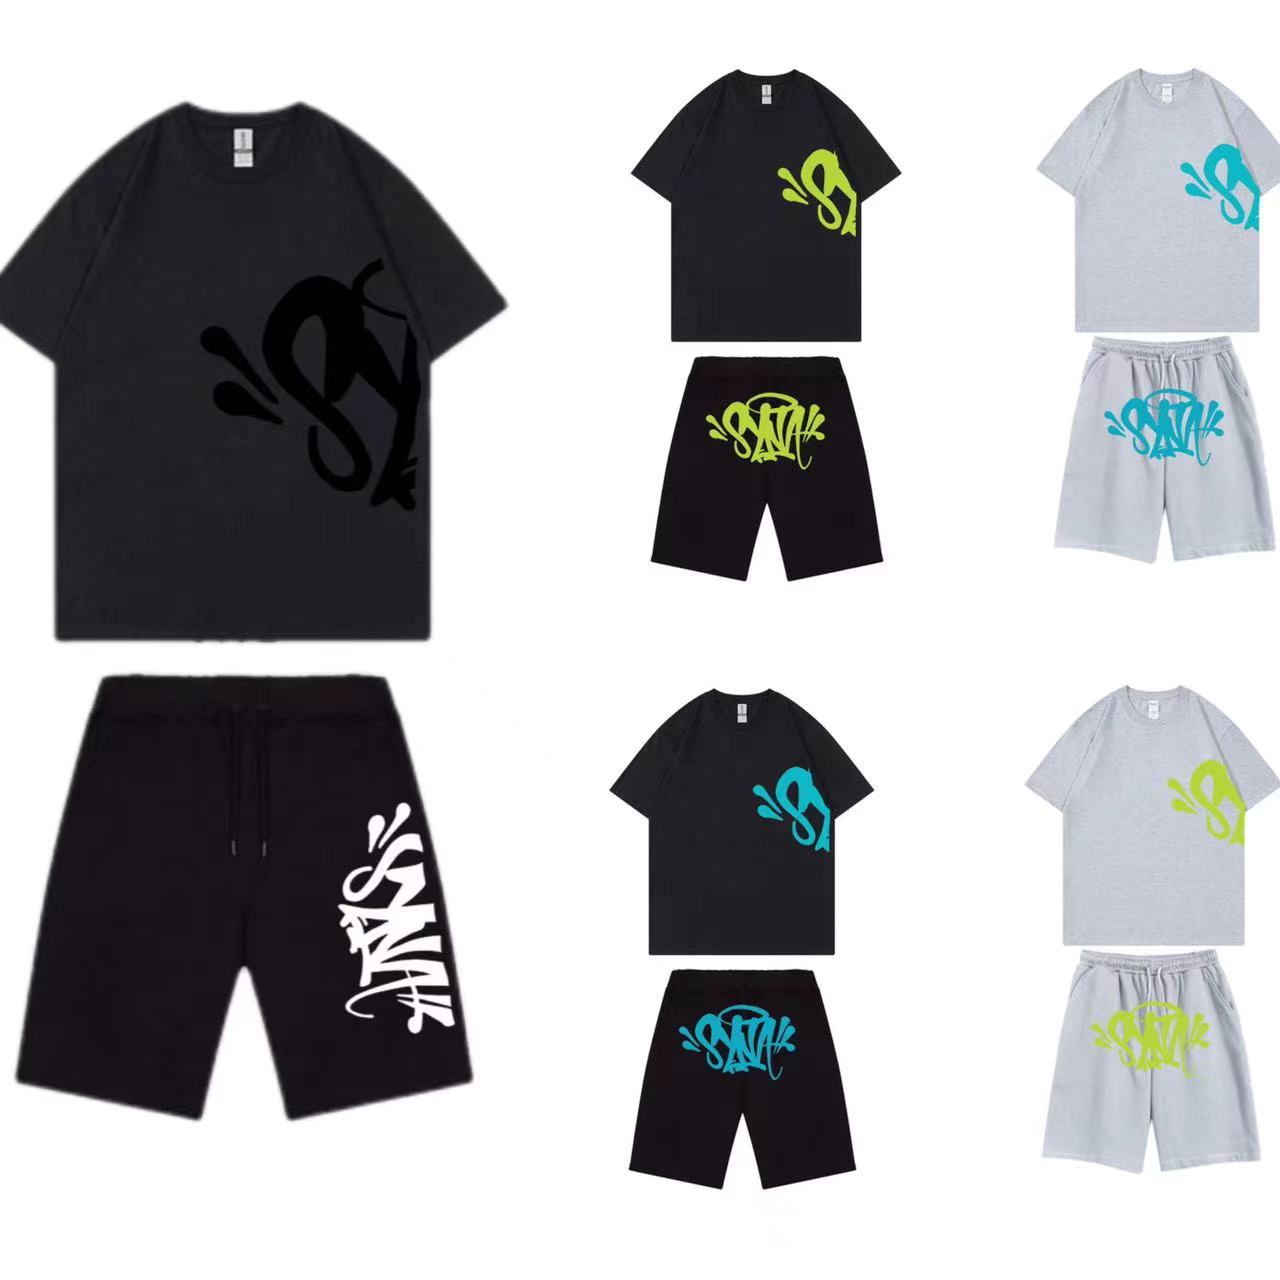 Tasarımcı Mens Trailsuit Erkekler Syna World Tshirts Set Tee Baskılı Tasarımcı T Shirt Kısa Y2K Tees Syna World Grafik Tshirt ve Şort Hip Hop Ttshirts Set Tee